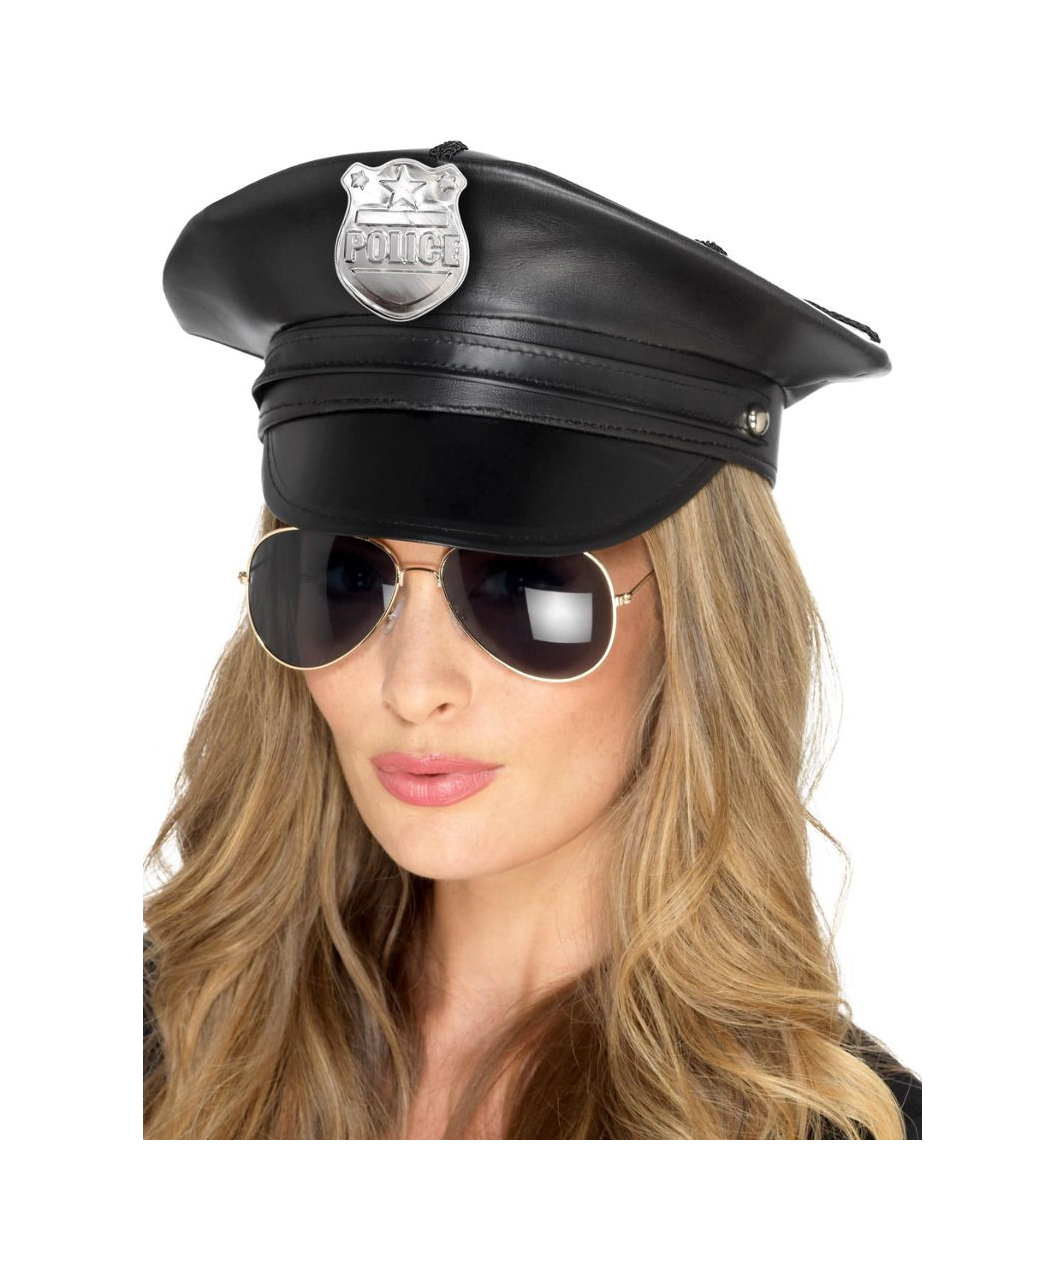 Fever black leatherette police hat